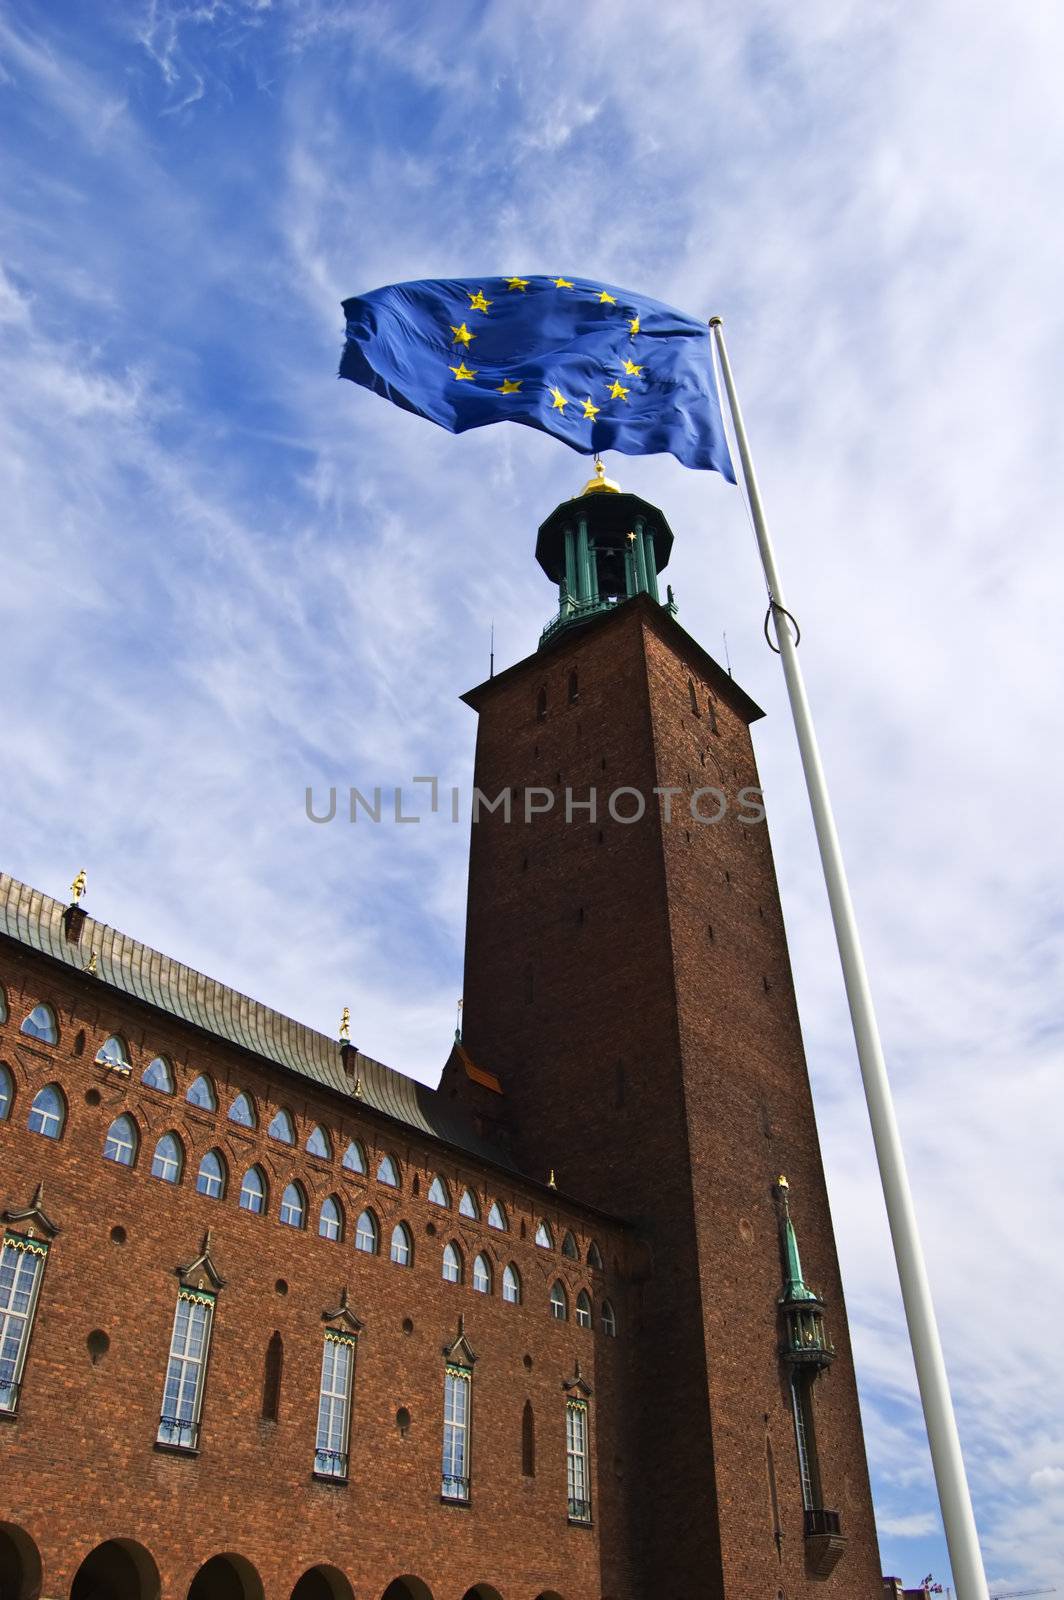 Stockholm City Hall with EU flag